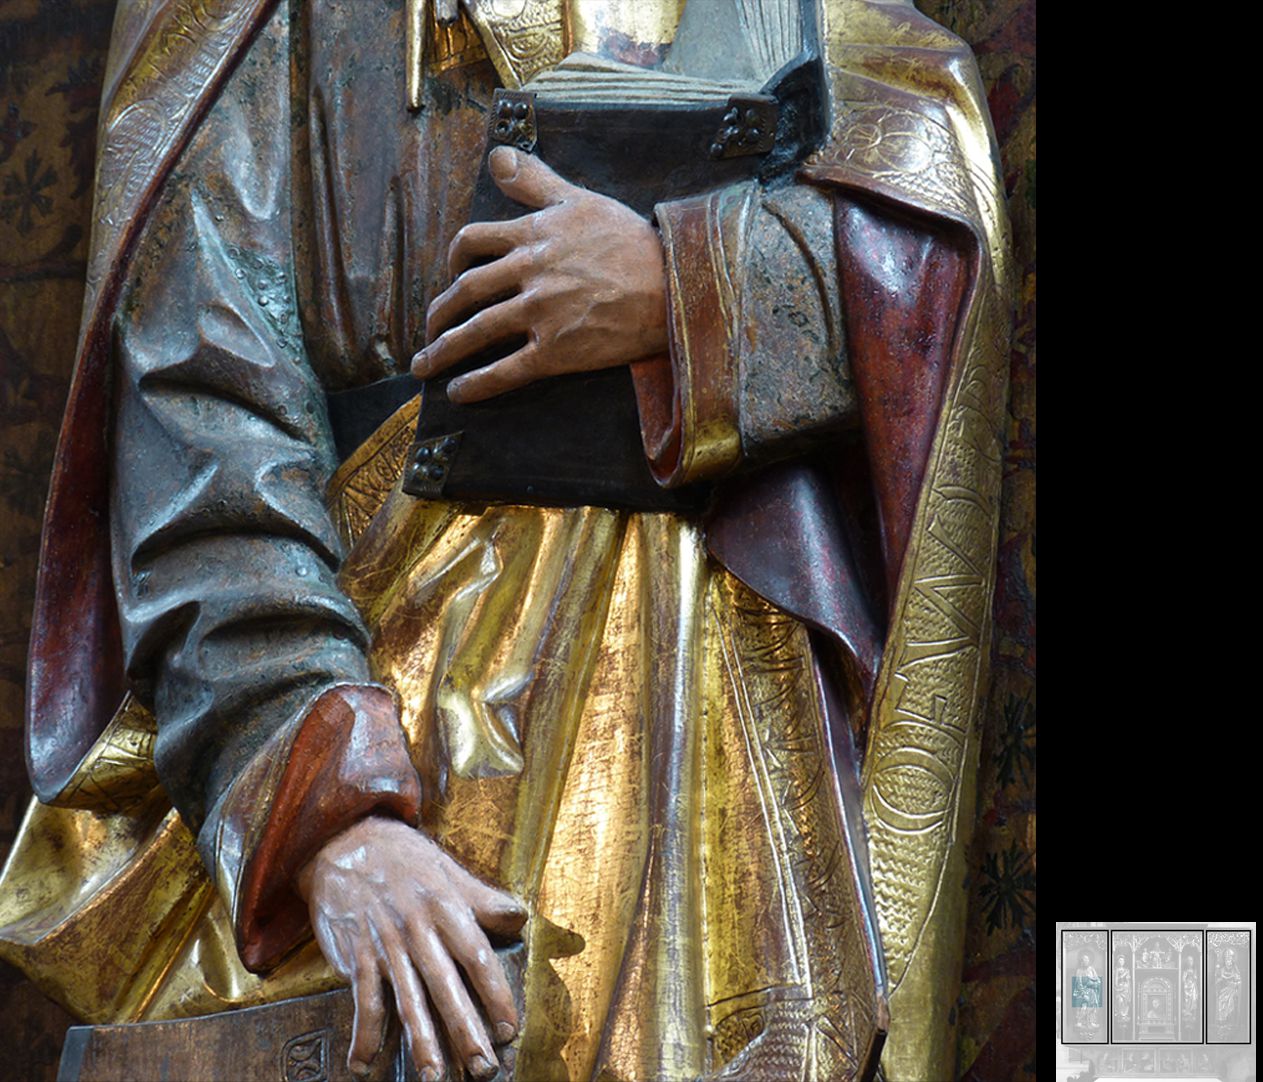 Marthaaltar Apostel Matthias, eine Hand hält das Buch, die andere lehnt auf dem Beil